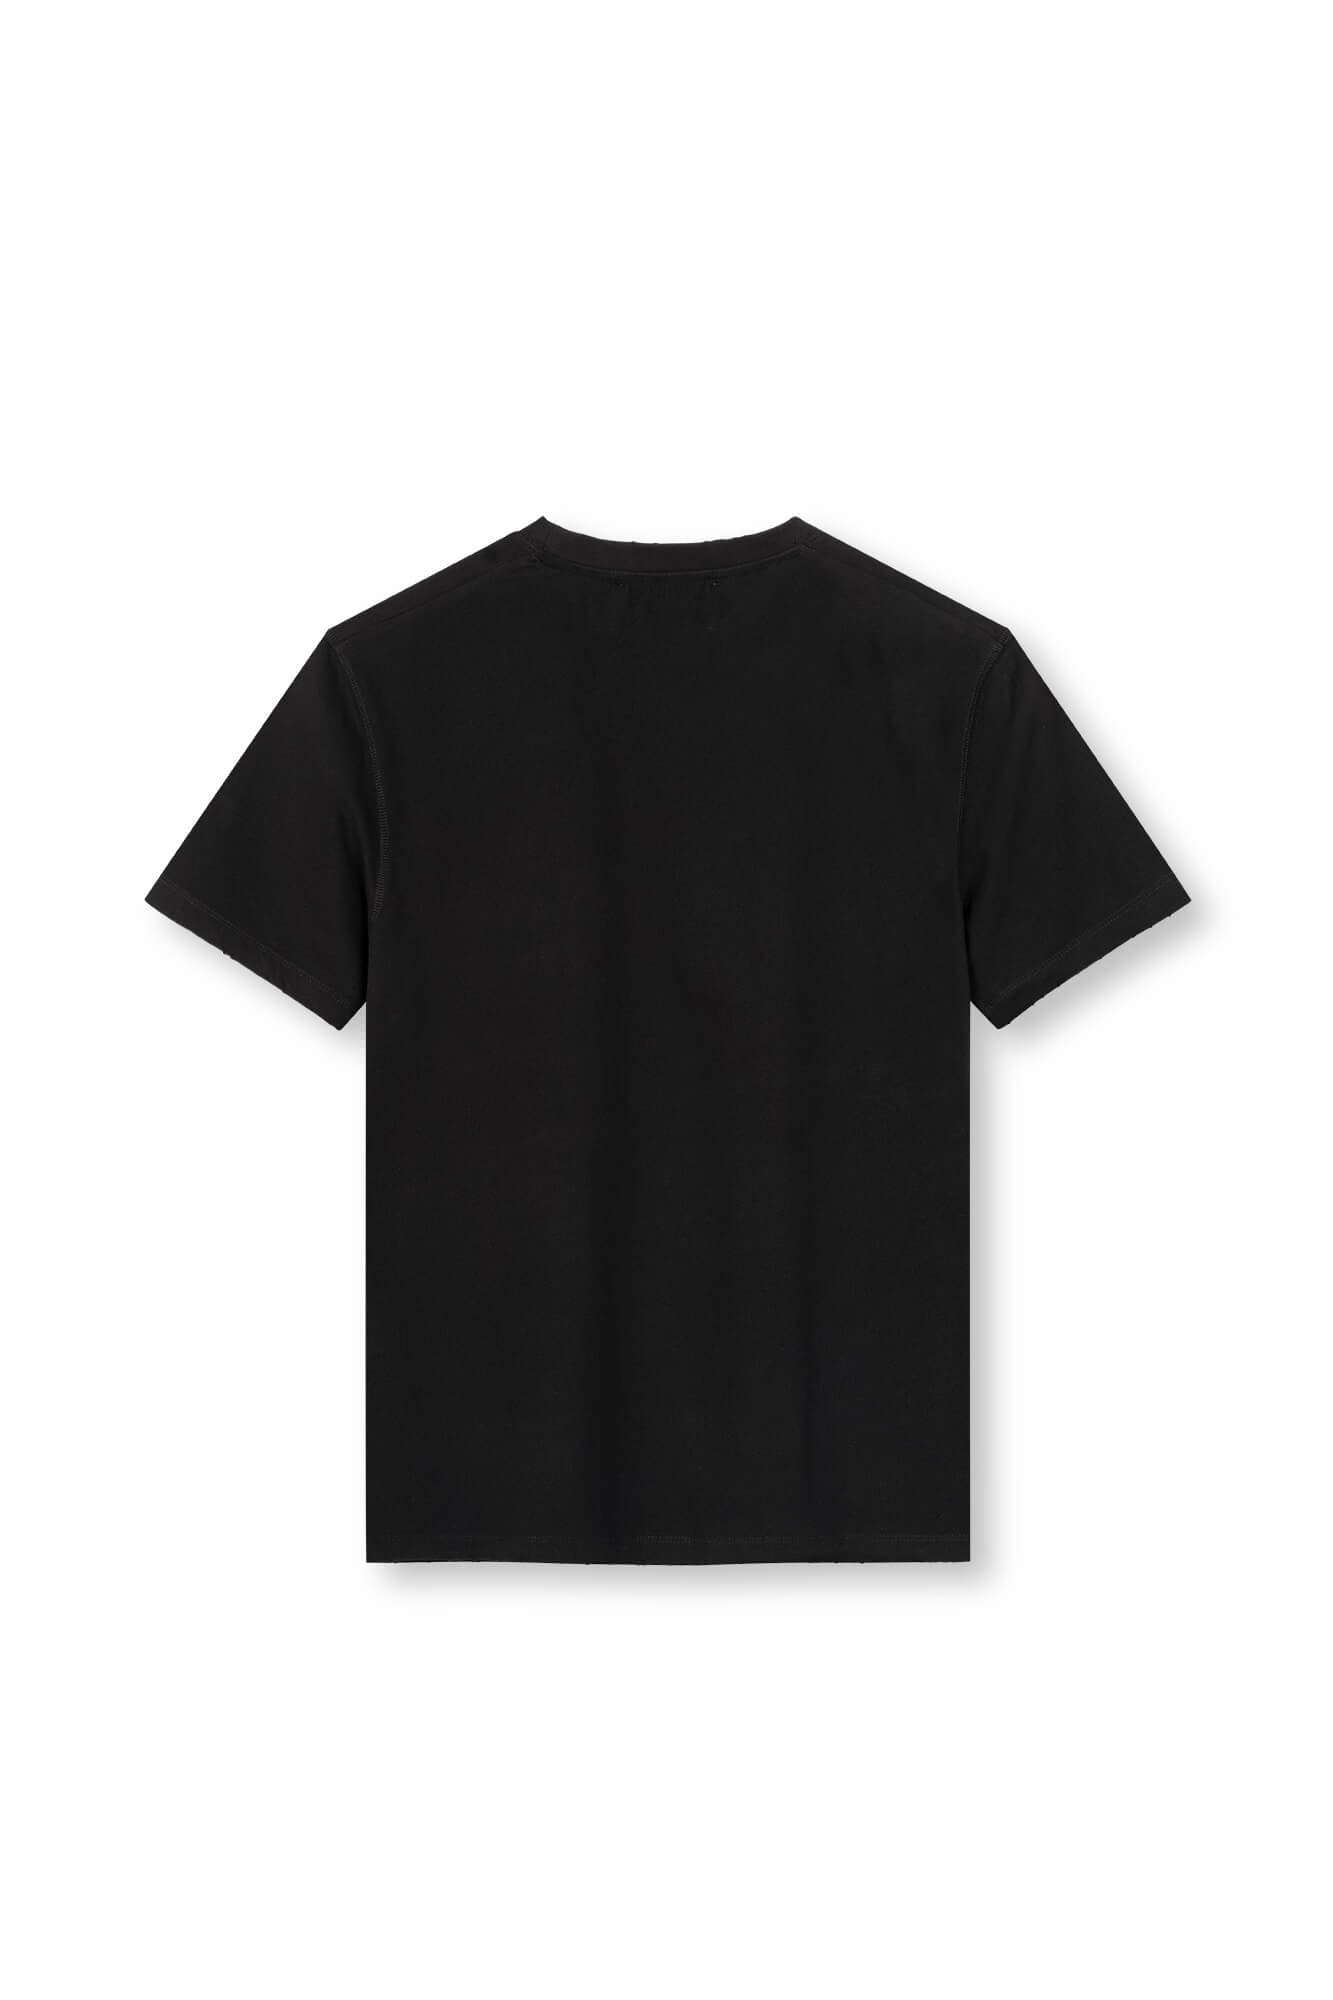 T-Shirt Zoey in schwarz von hinten by VIVAL.STUDIO